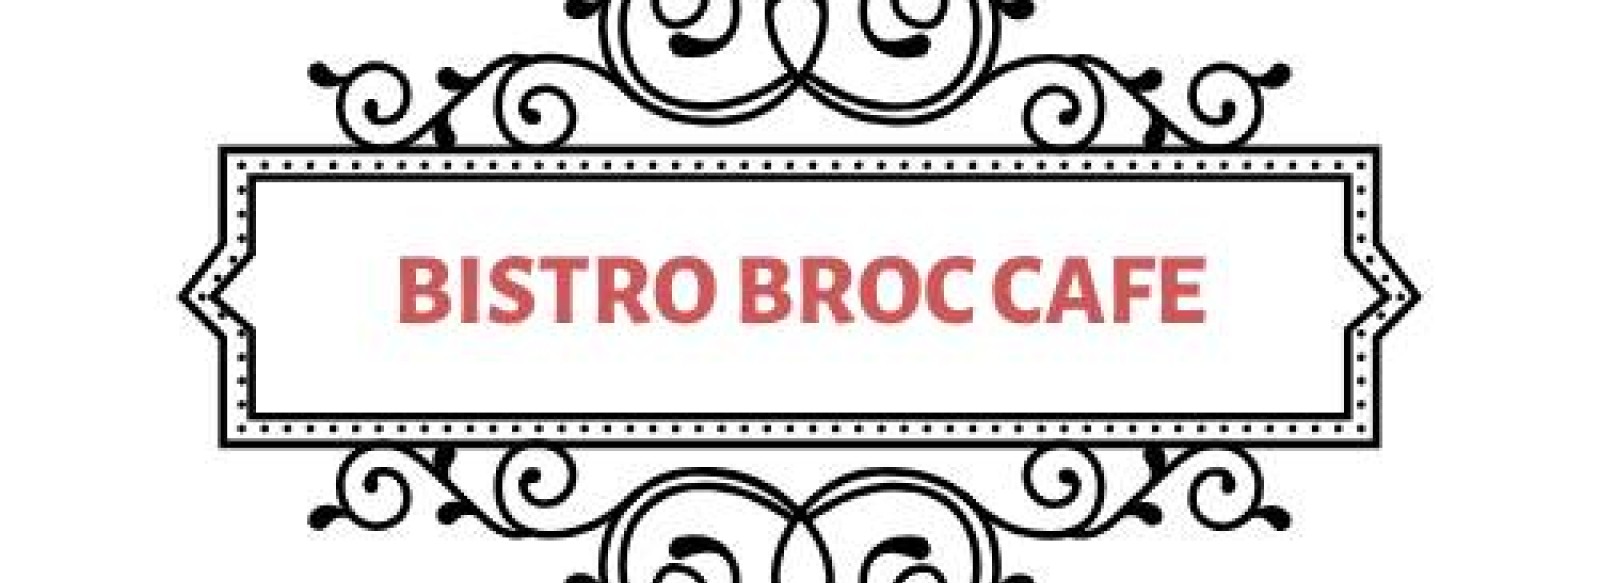 Change d'R, Bistro Broc Cafe